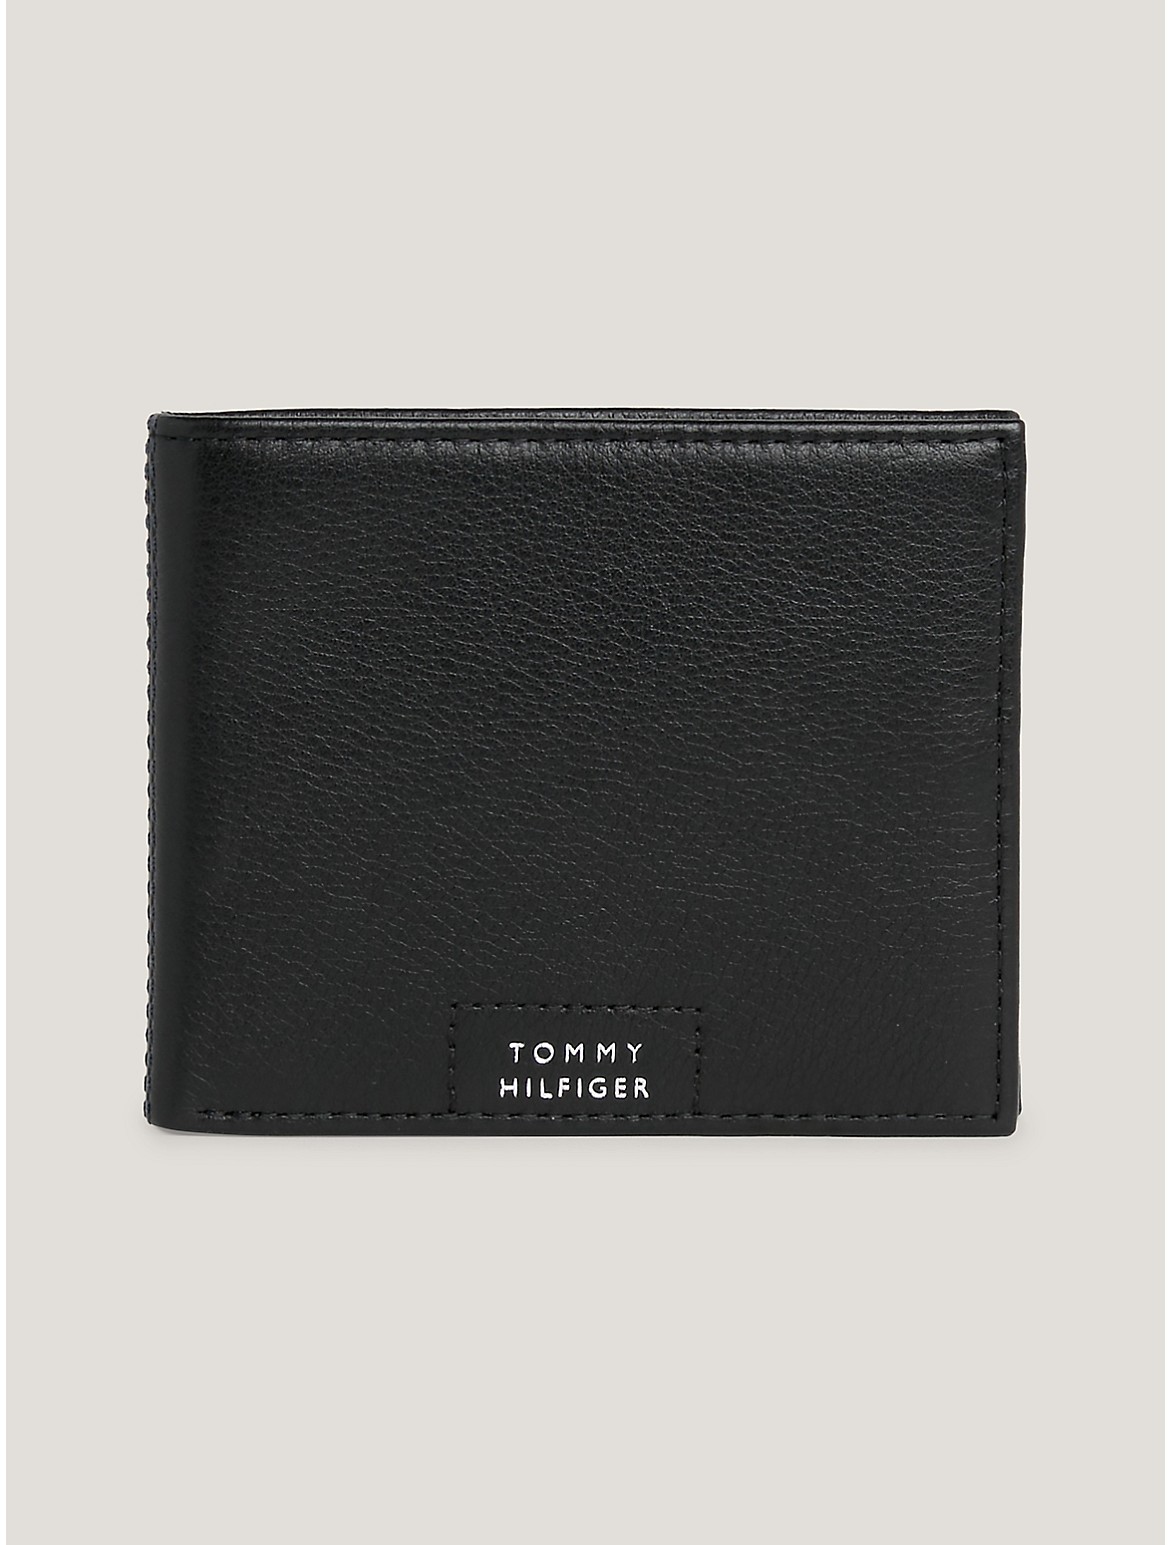 Tommy Hilfiger Men's Hilfiger Leather Card Wallet